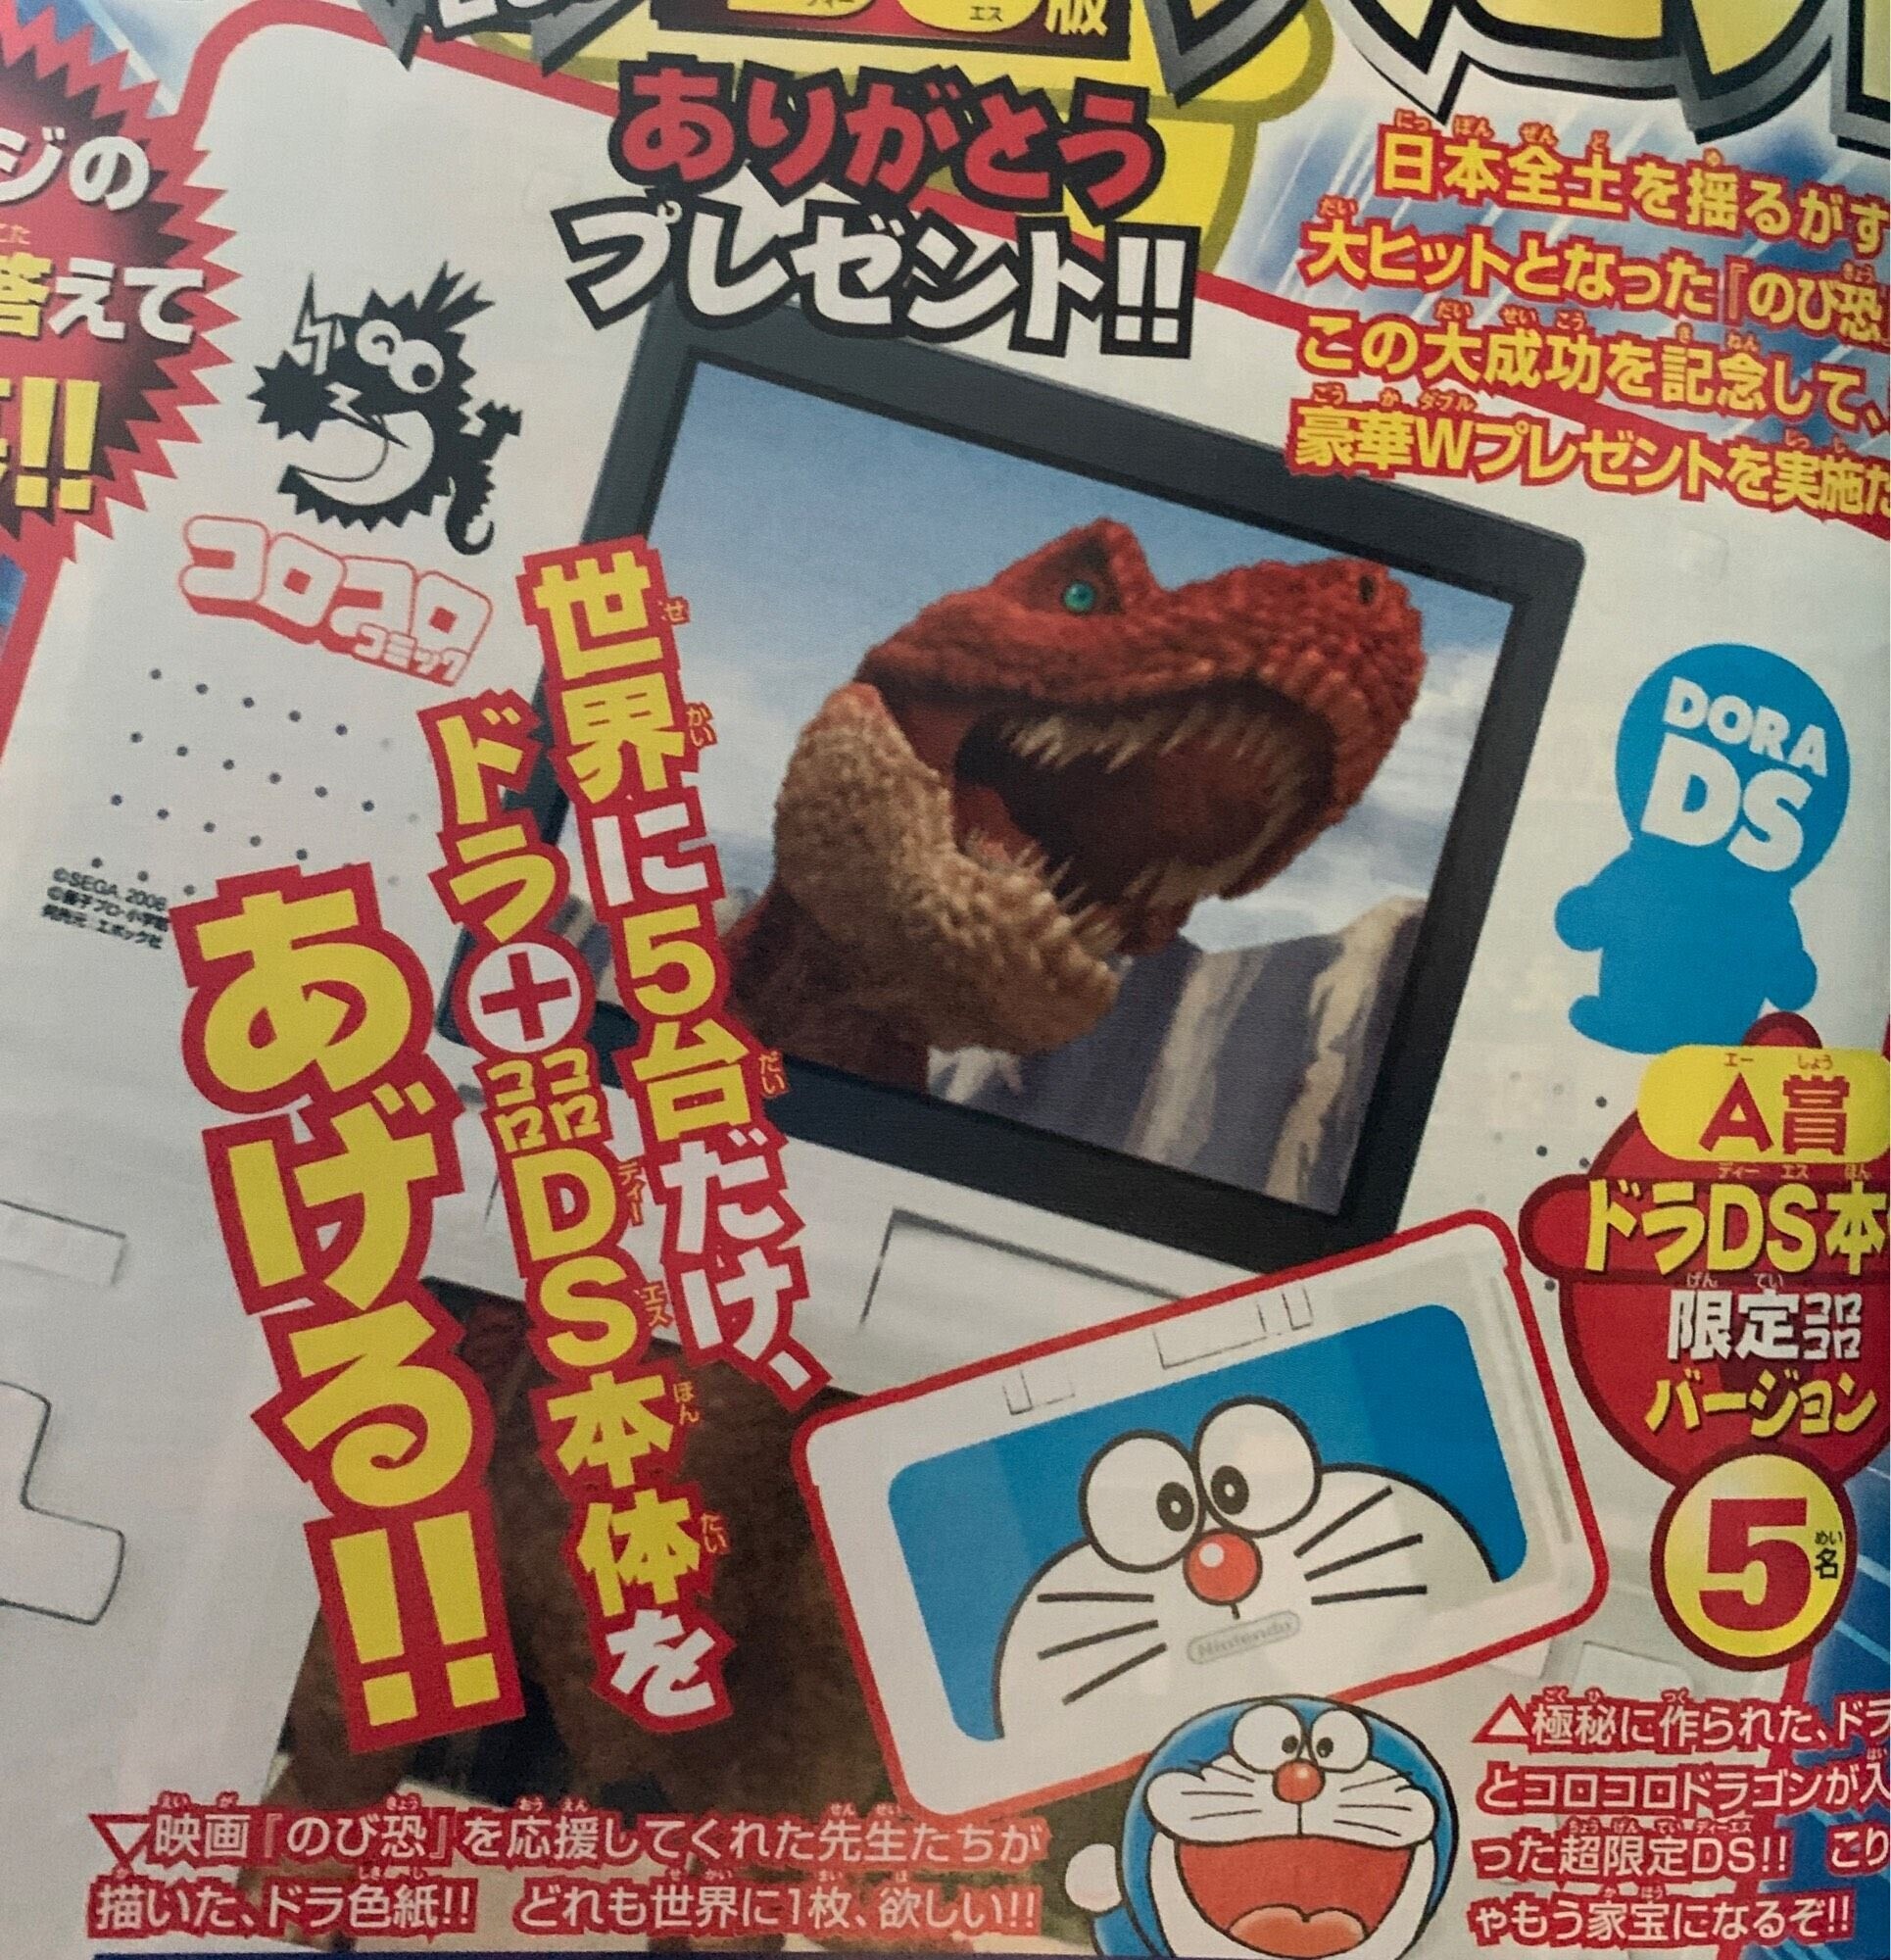  Nintendo DS CoroCoro Doraemon Console